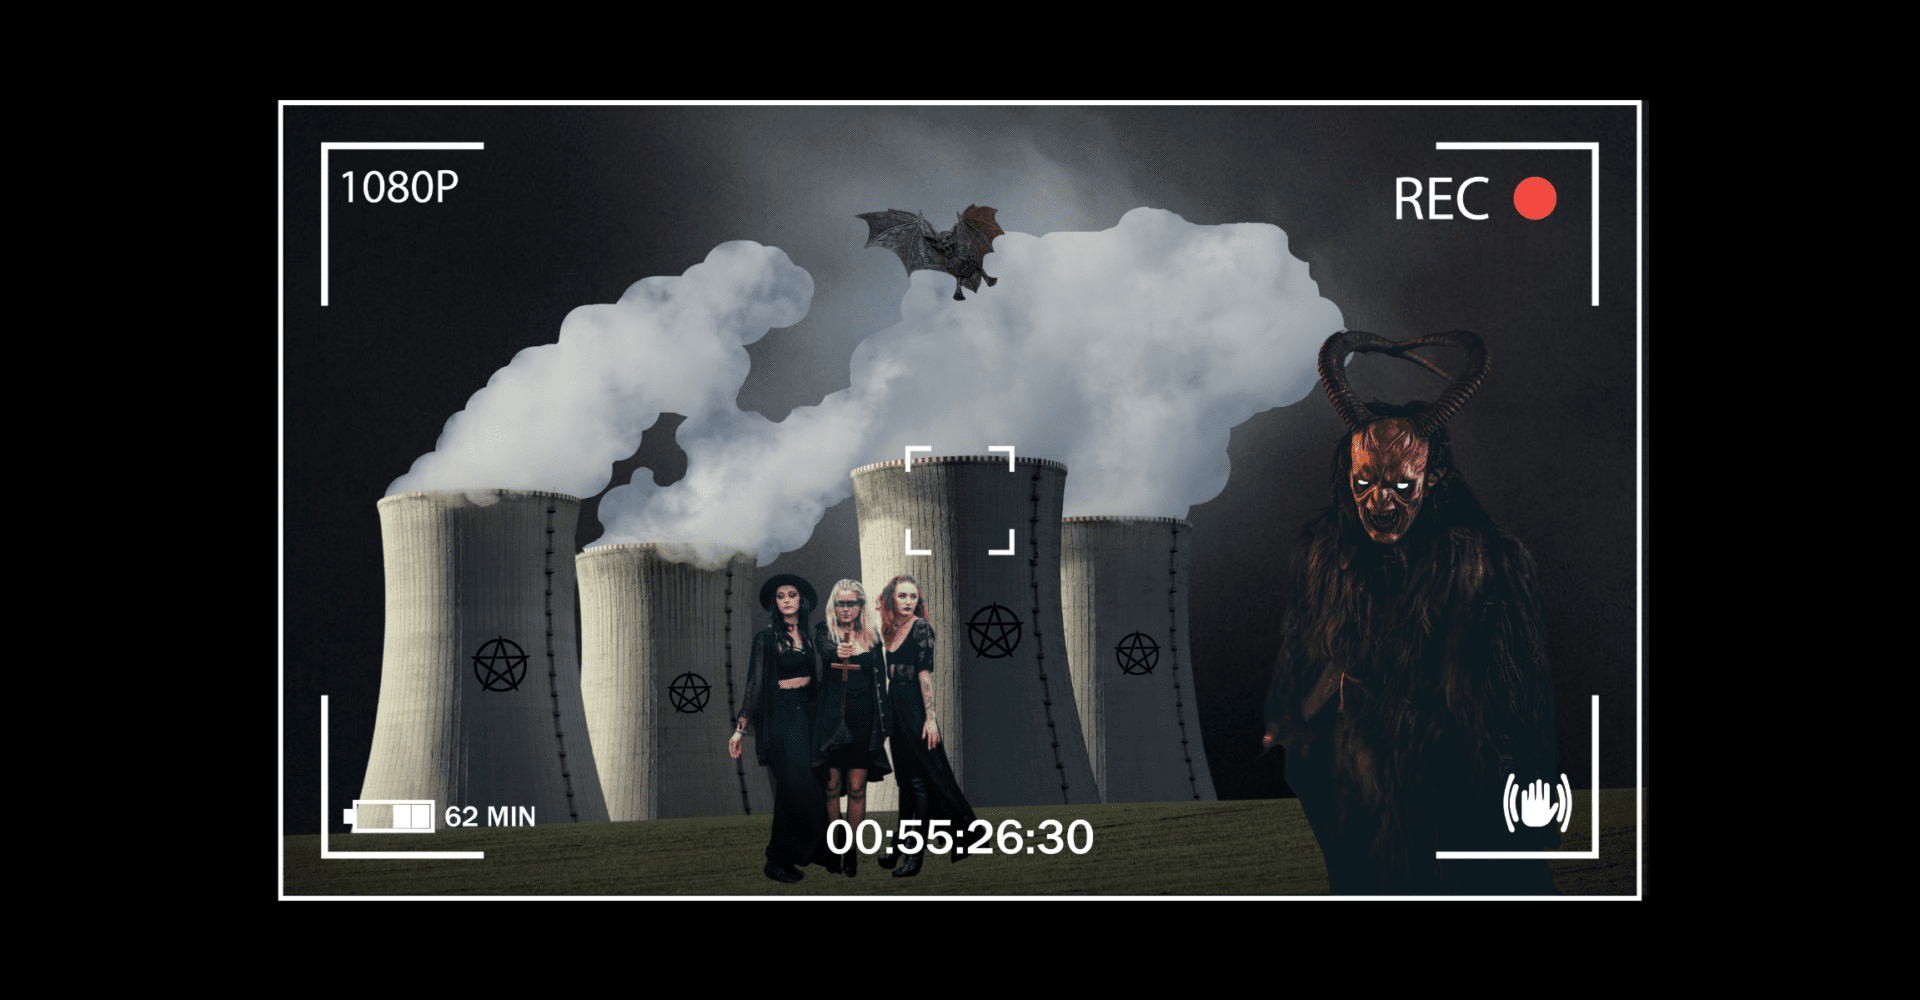 Noc. Elektrownia jądrowa z czarnymi znakami przedstawiającymi pentagram. Trzy kobiety ubrane na czarno stoją przed kominami, z których bucha dym. Jedna z nich trzyma odwrócony krzyż. Po prawej widnieje sylwetka szatana. Na górze leci nietoperz.